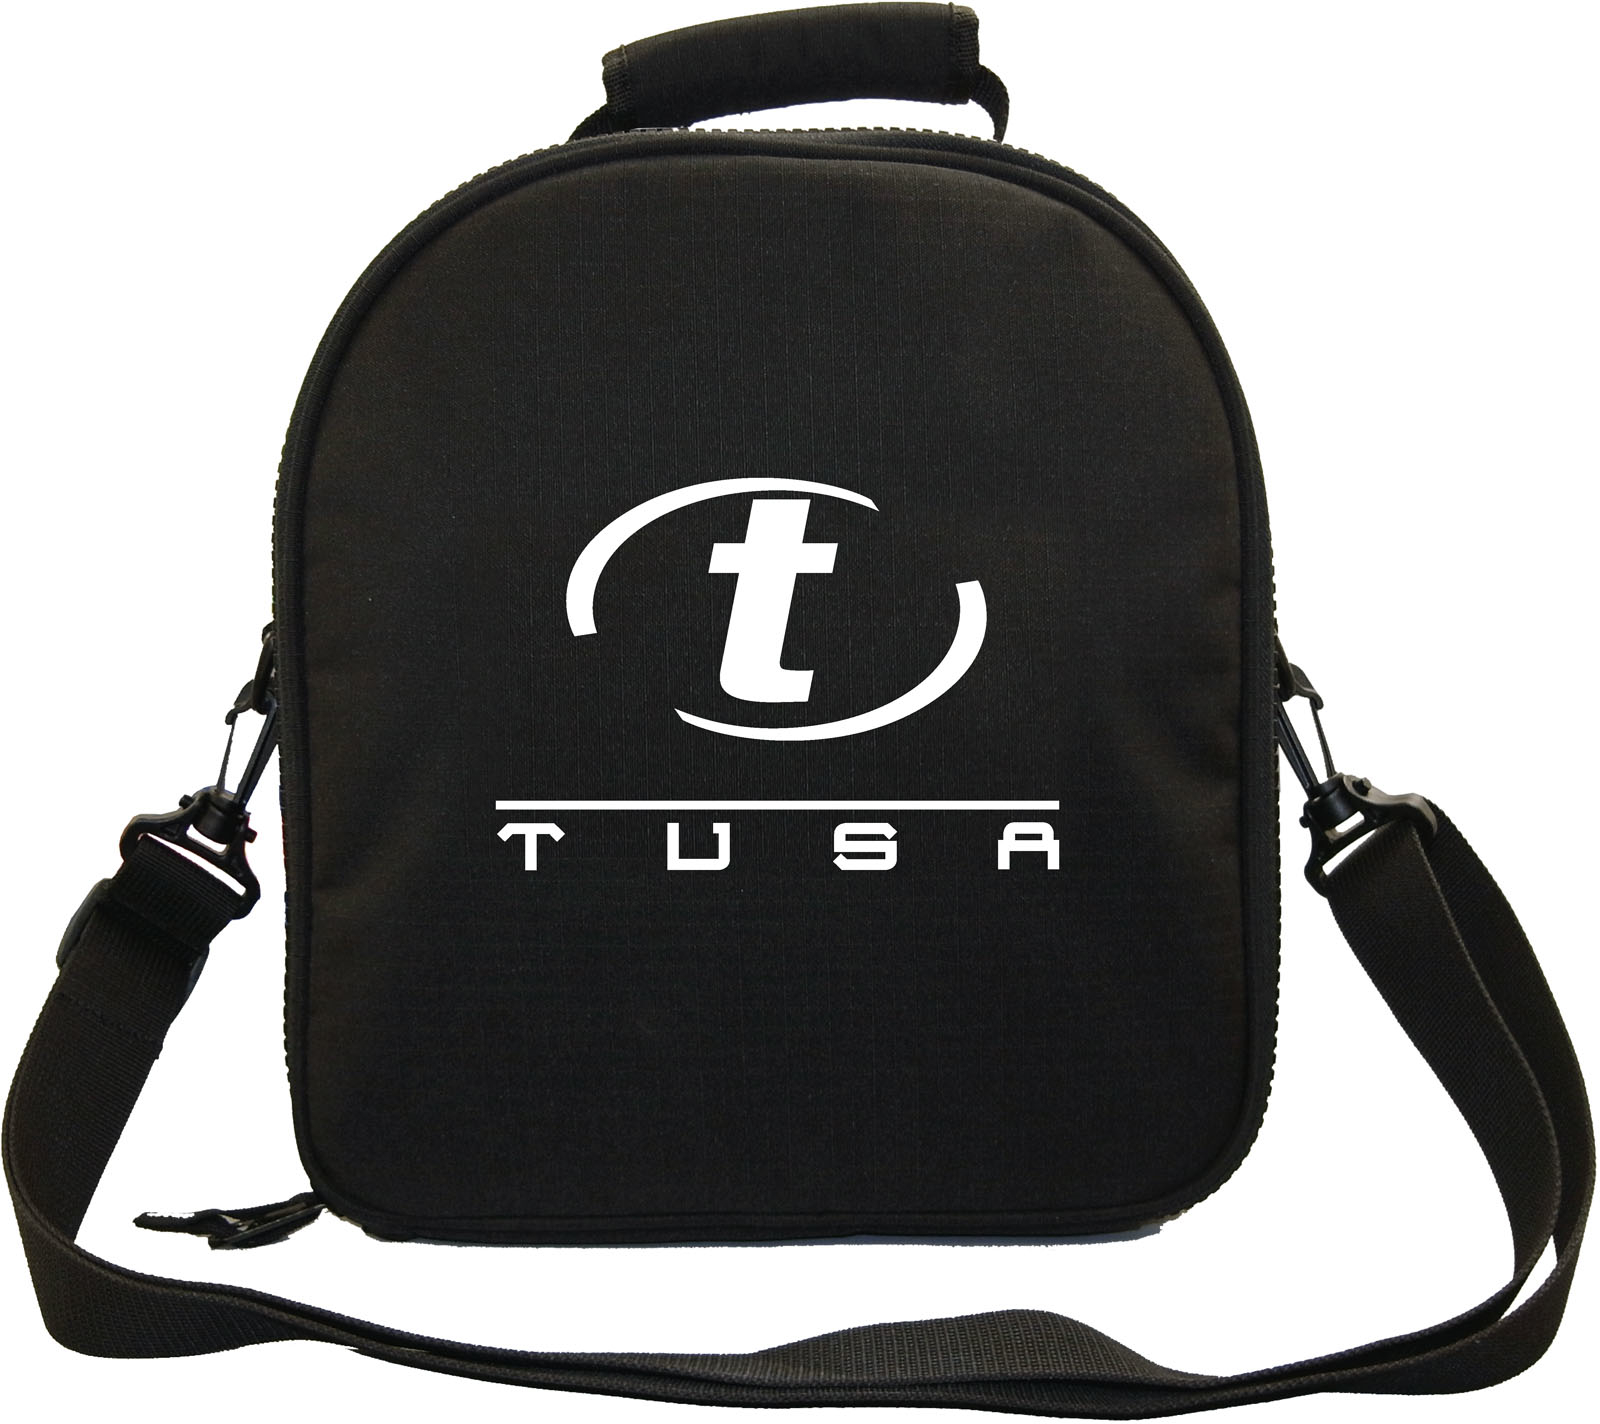 TUSA Regulator Carry Bag